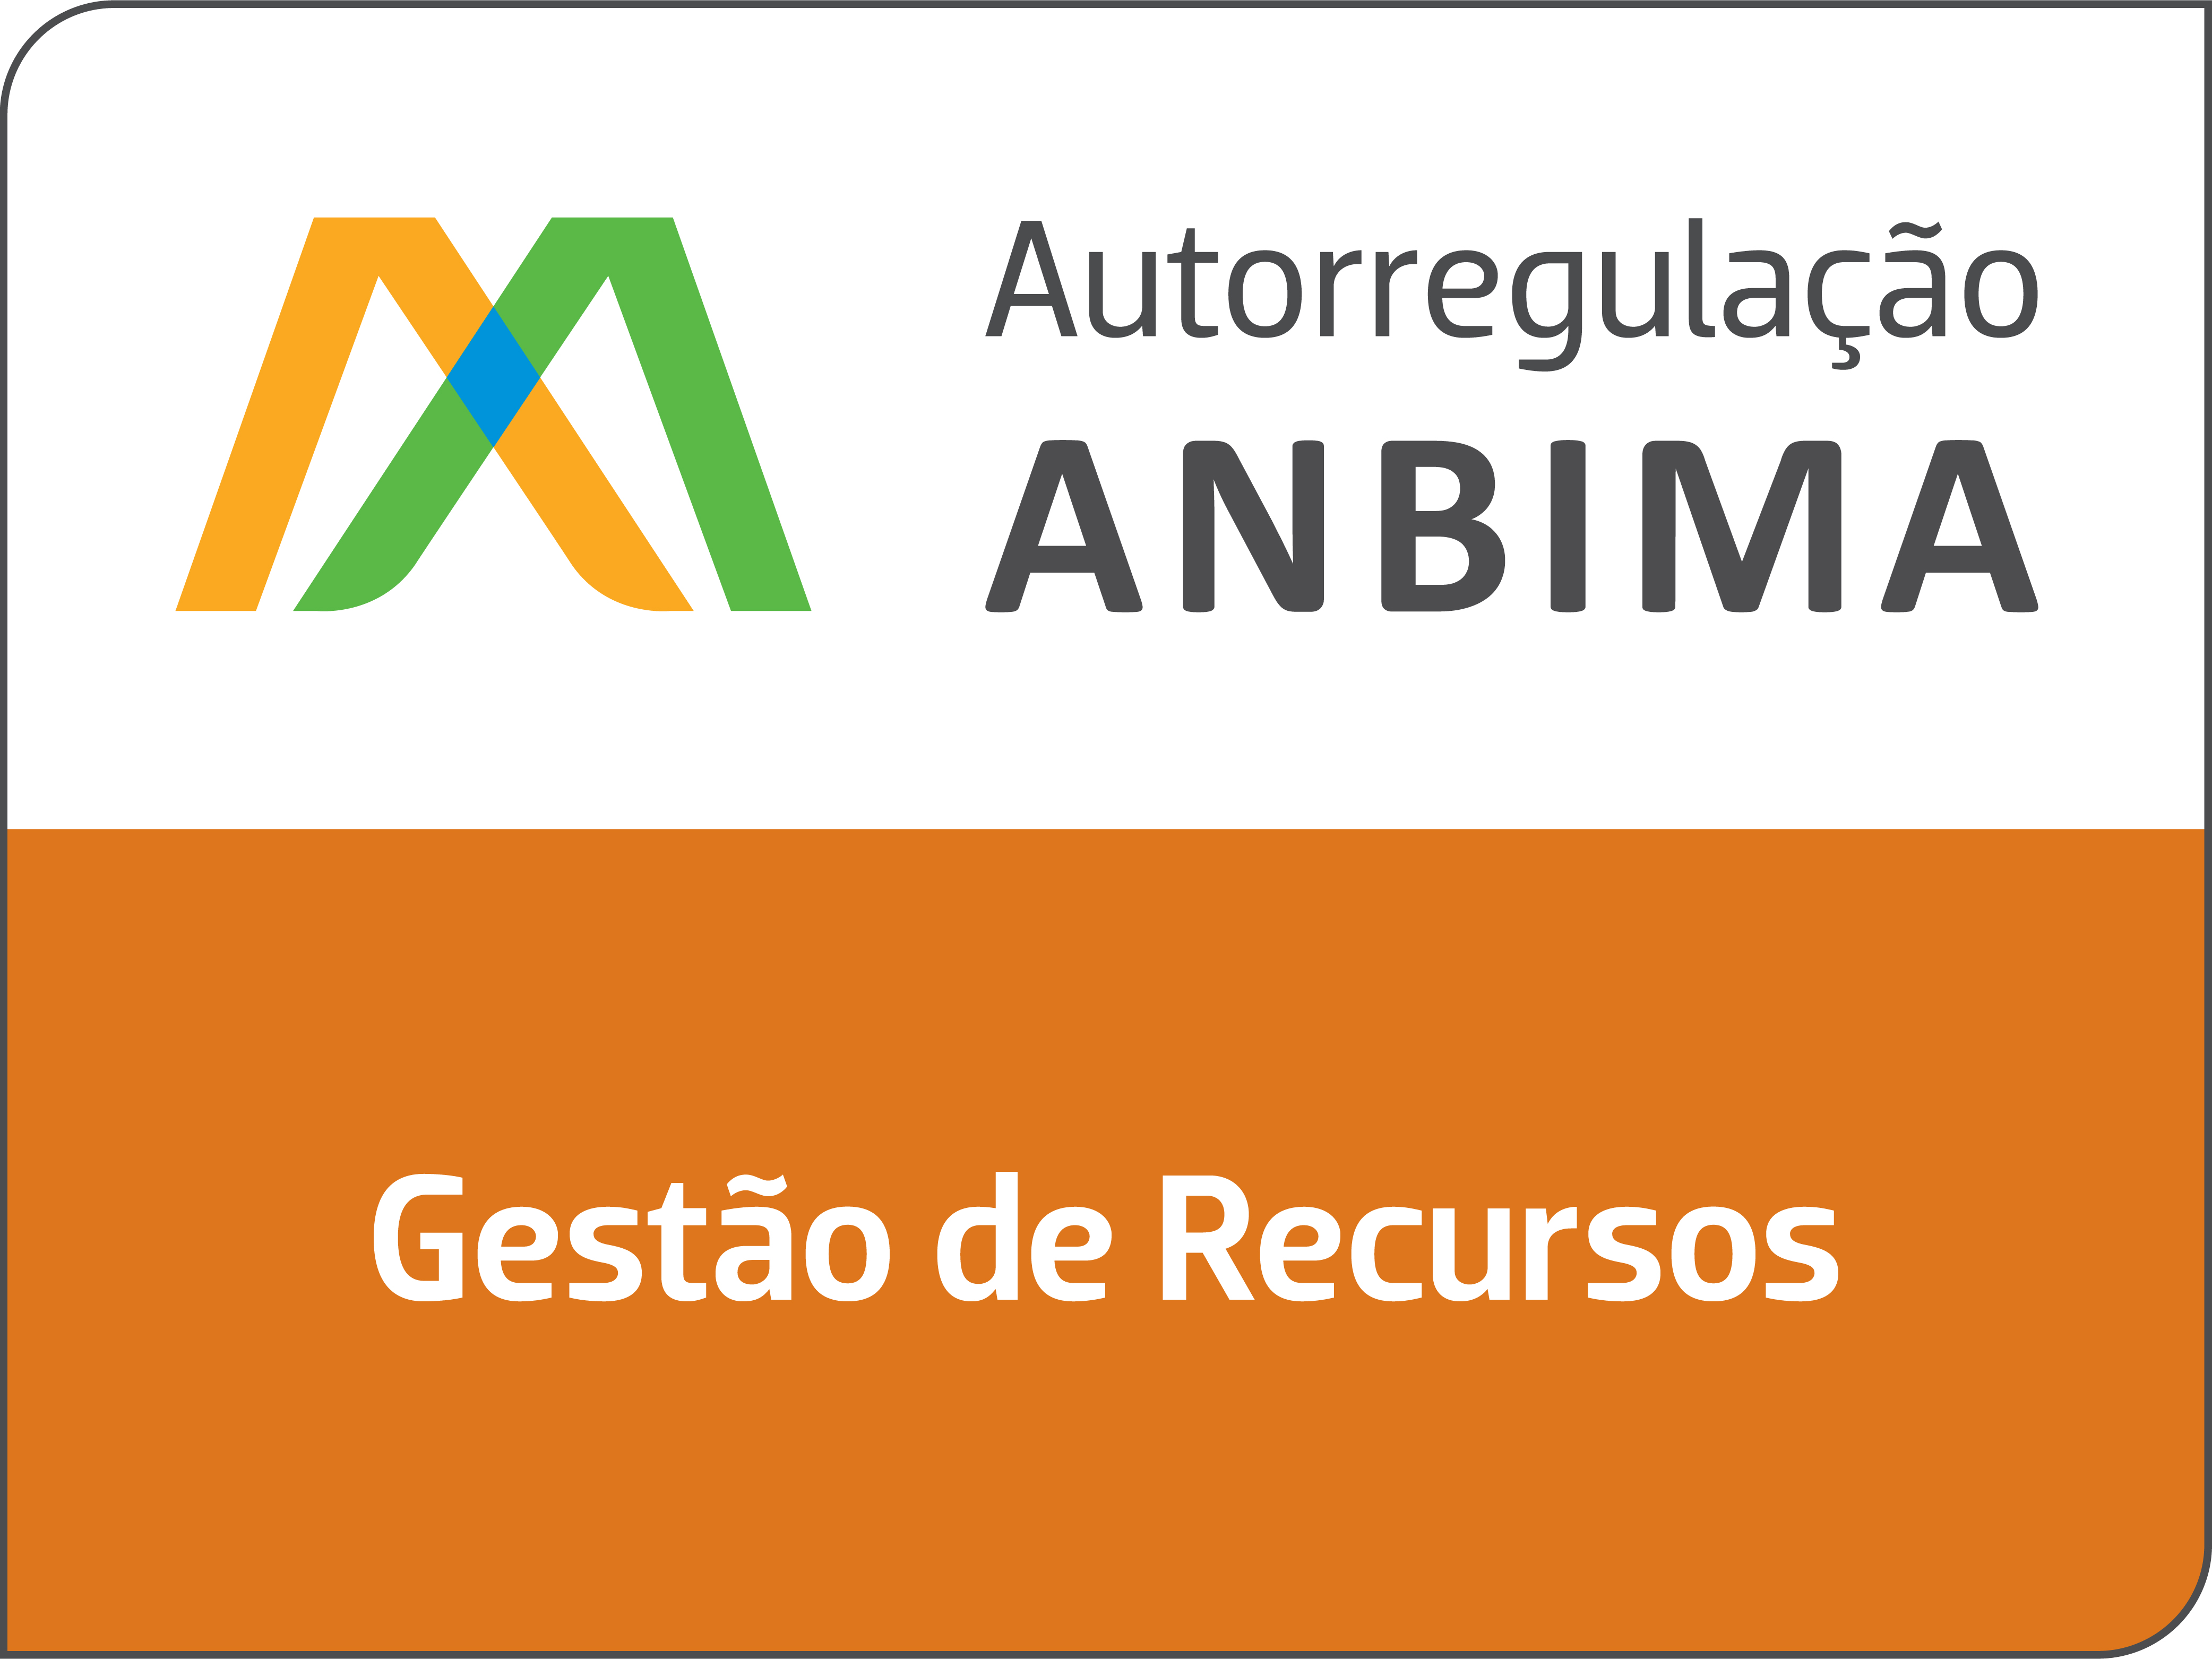 AMBIMA-Gestao-de-Recursos-Permanente.jpg